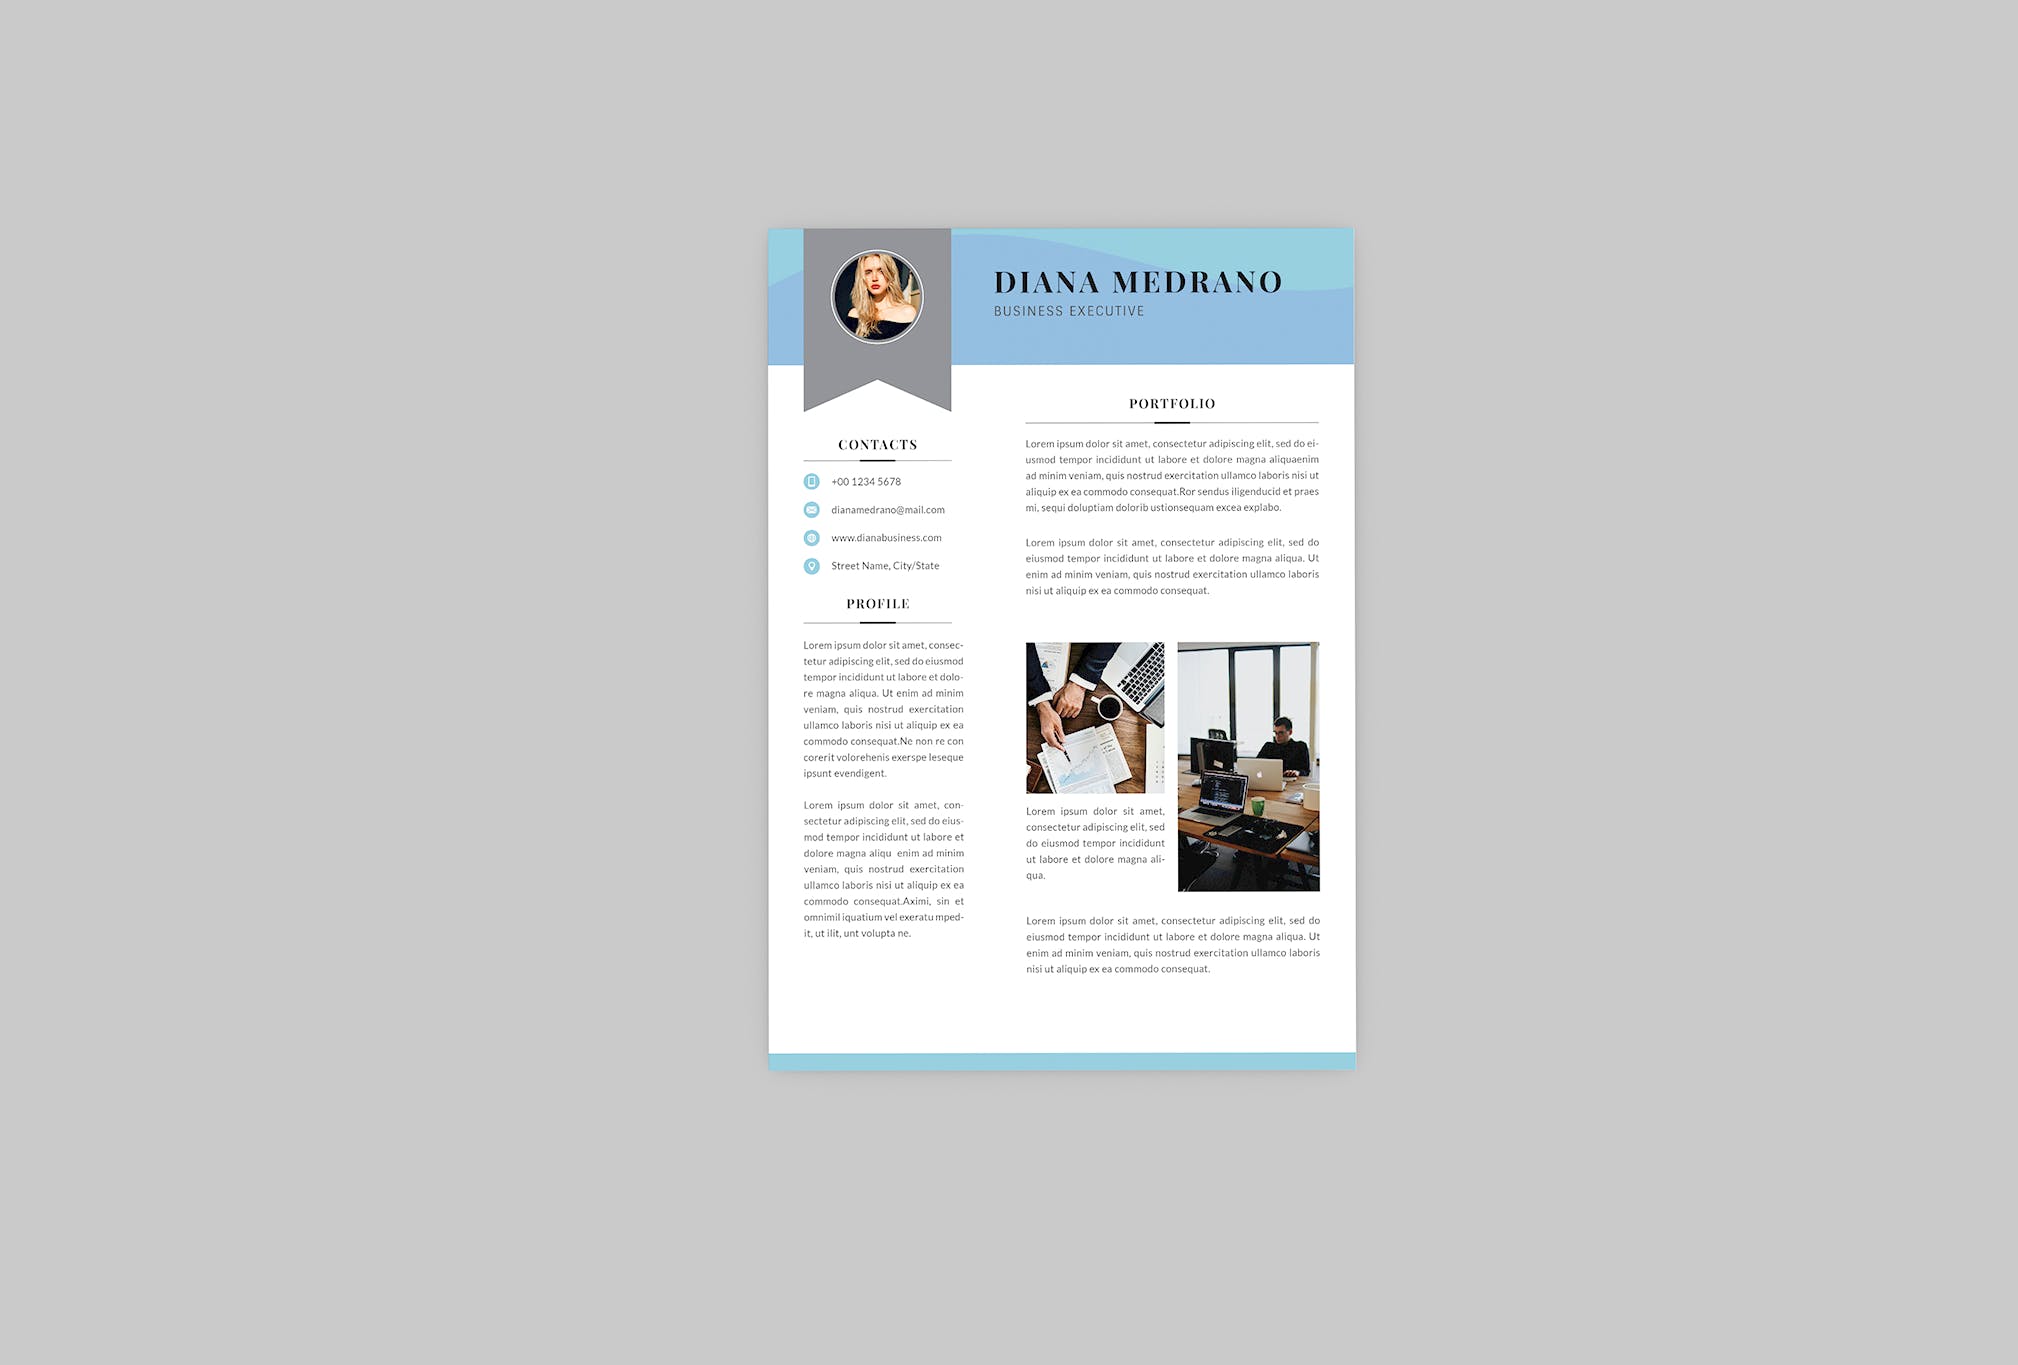 3合1企业主管电子非凡图库精选简历模板 Diana Business Resume Designer插图(3)